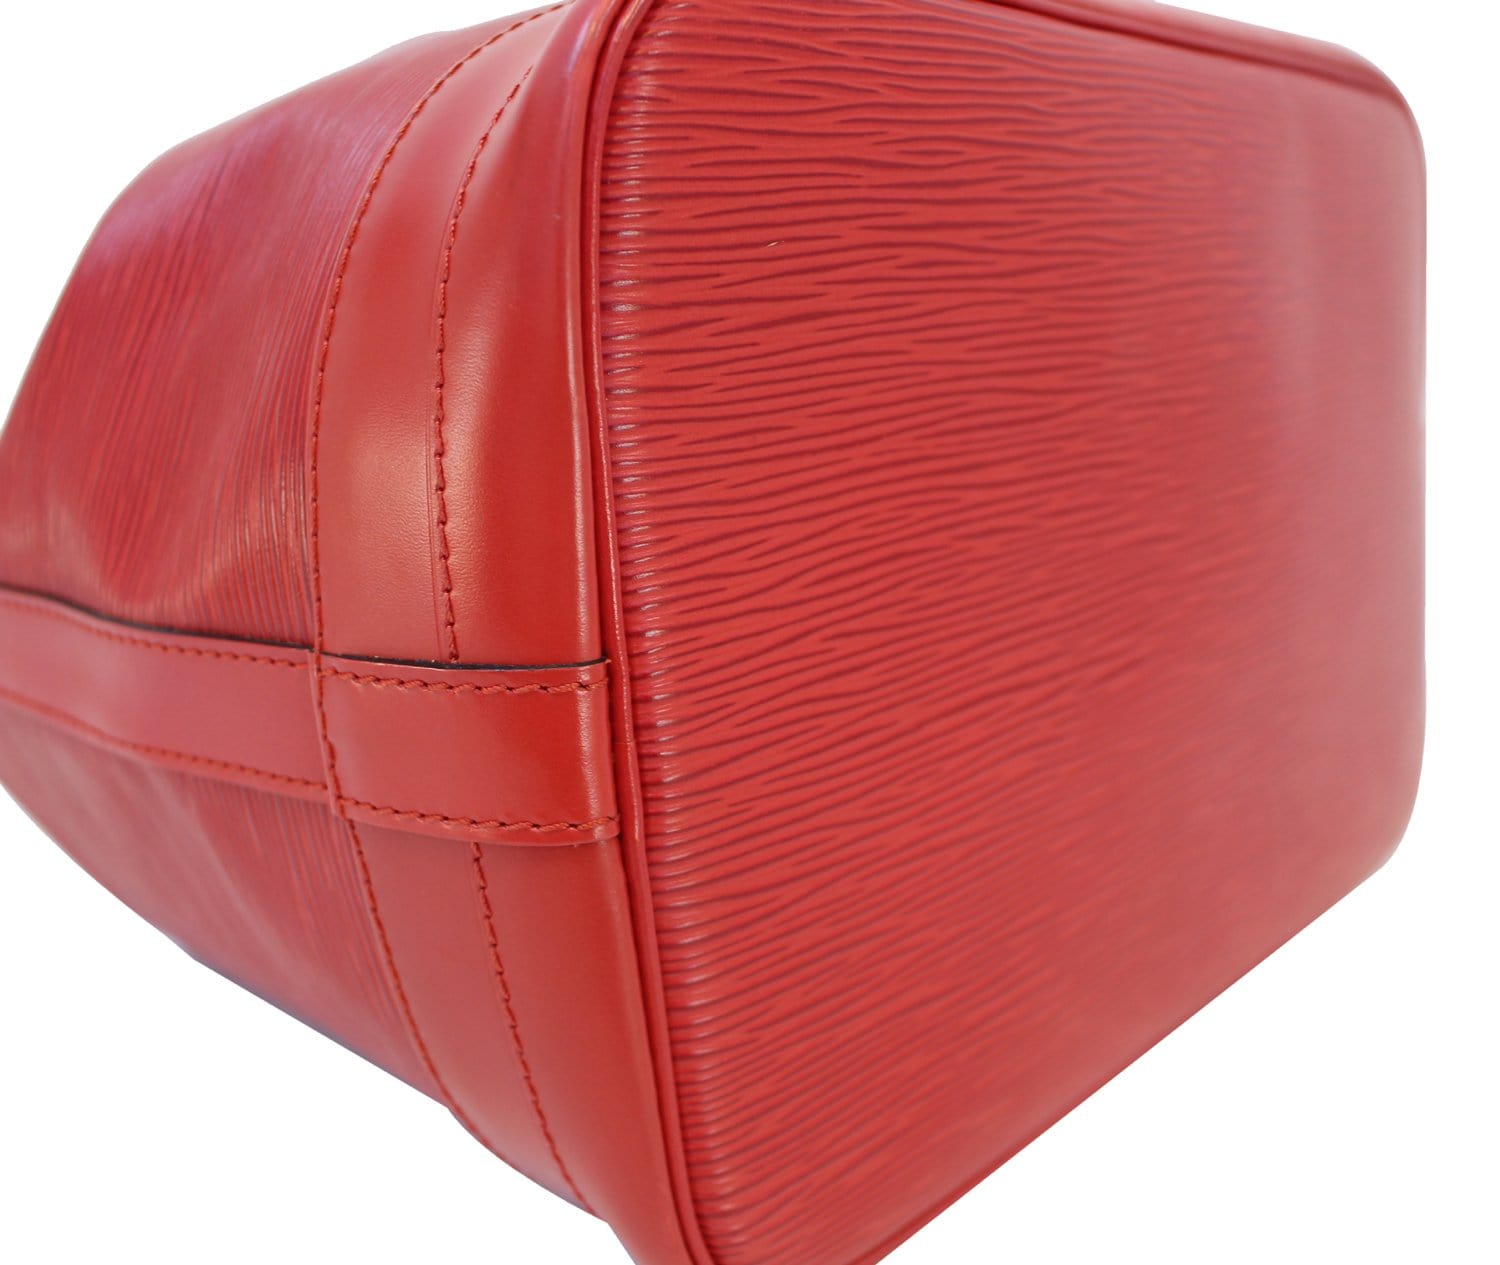 Louis Vuitton Noé Grand modele shoulder bag in red epi leather, gold  hardware at 1stDibs